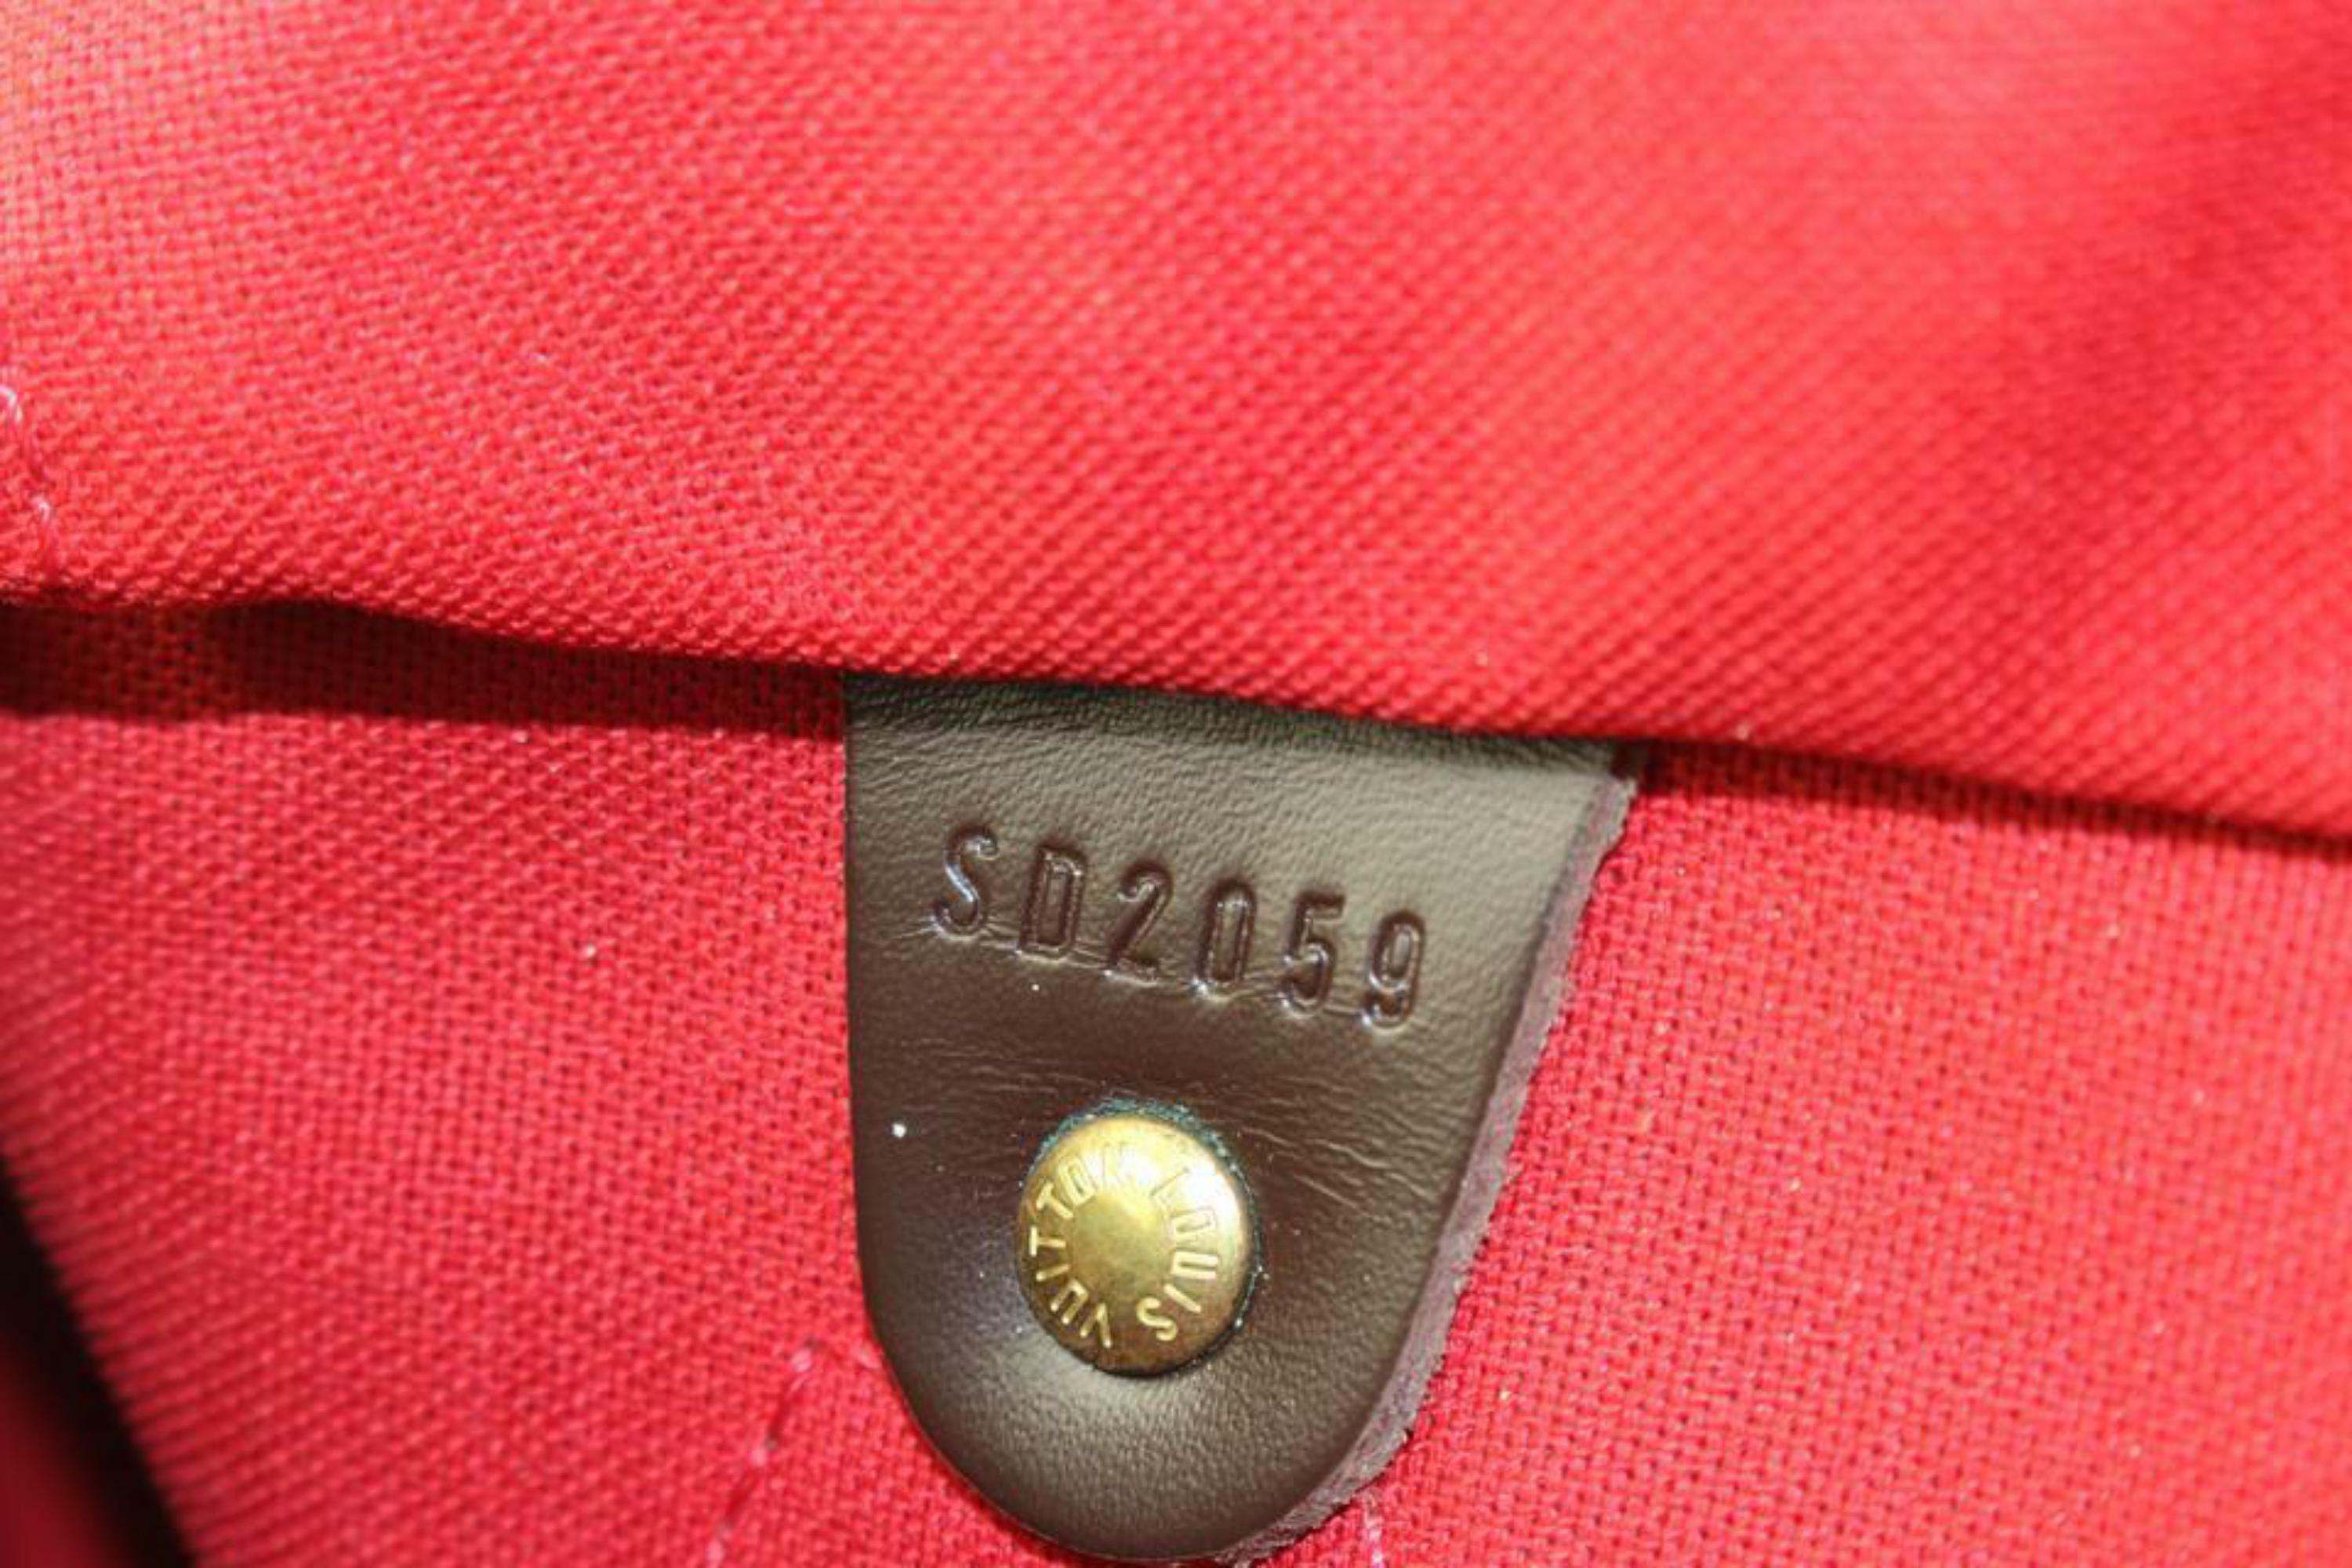 Louis Vuitton Damier Ebene Speedy 25 Boston Tasche PM 1LV1114b
Datumscode/Seriennummer: SD2059
Hergestellt in: U.S.A.
Maße: Länge:  10